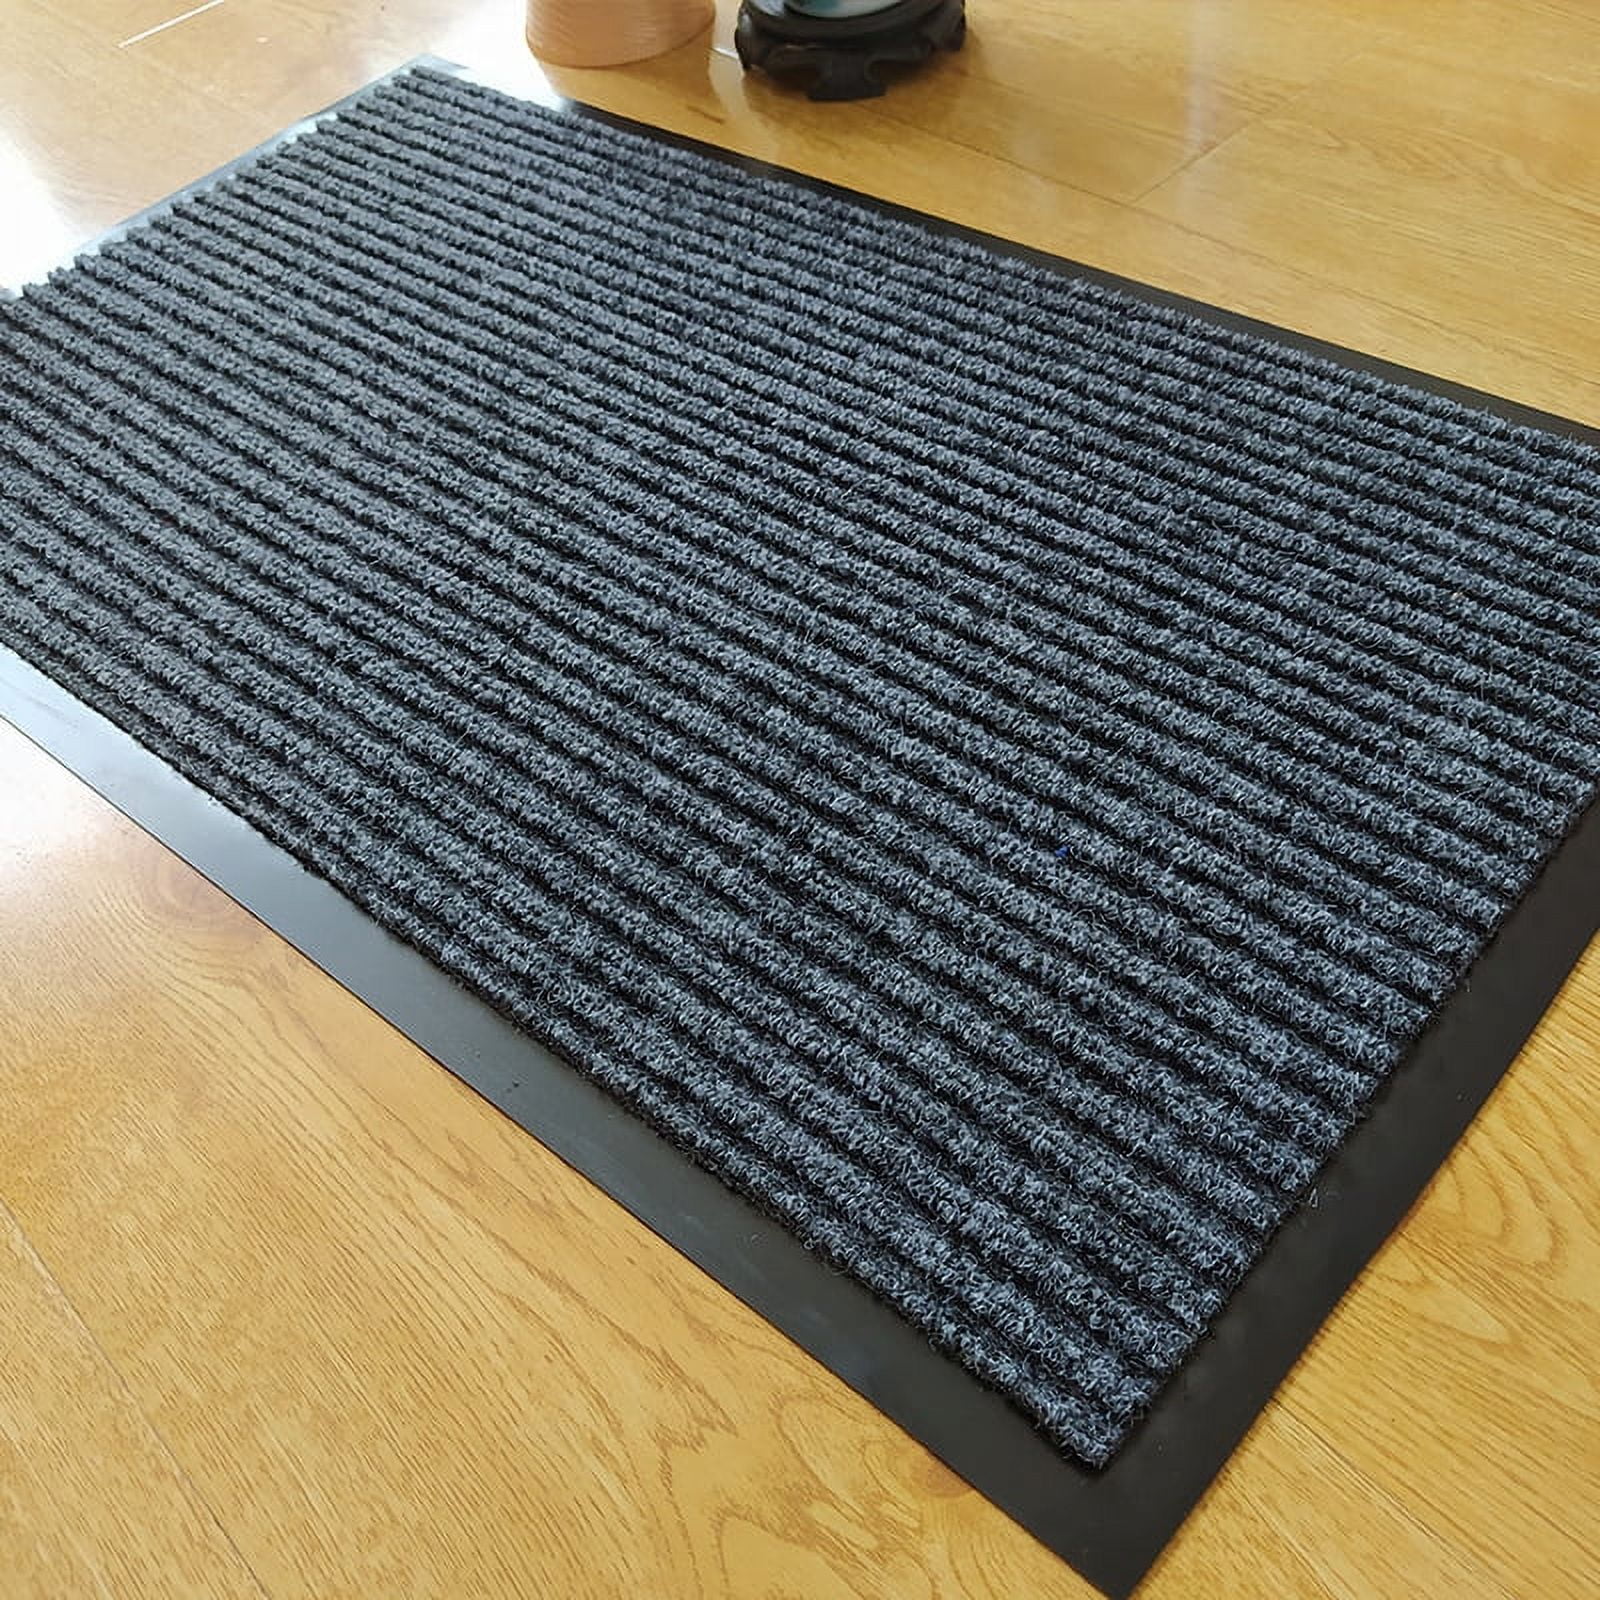 Steel-Coil Doormat 15 x 23